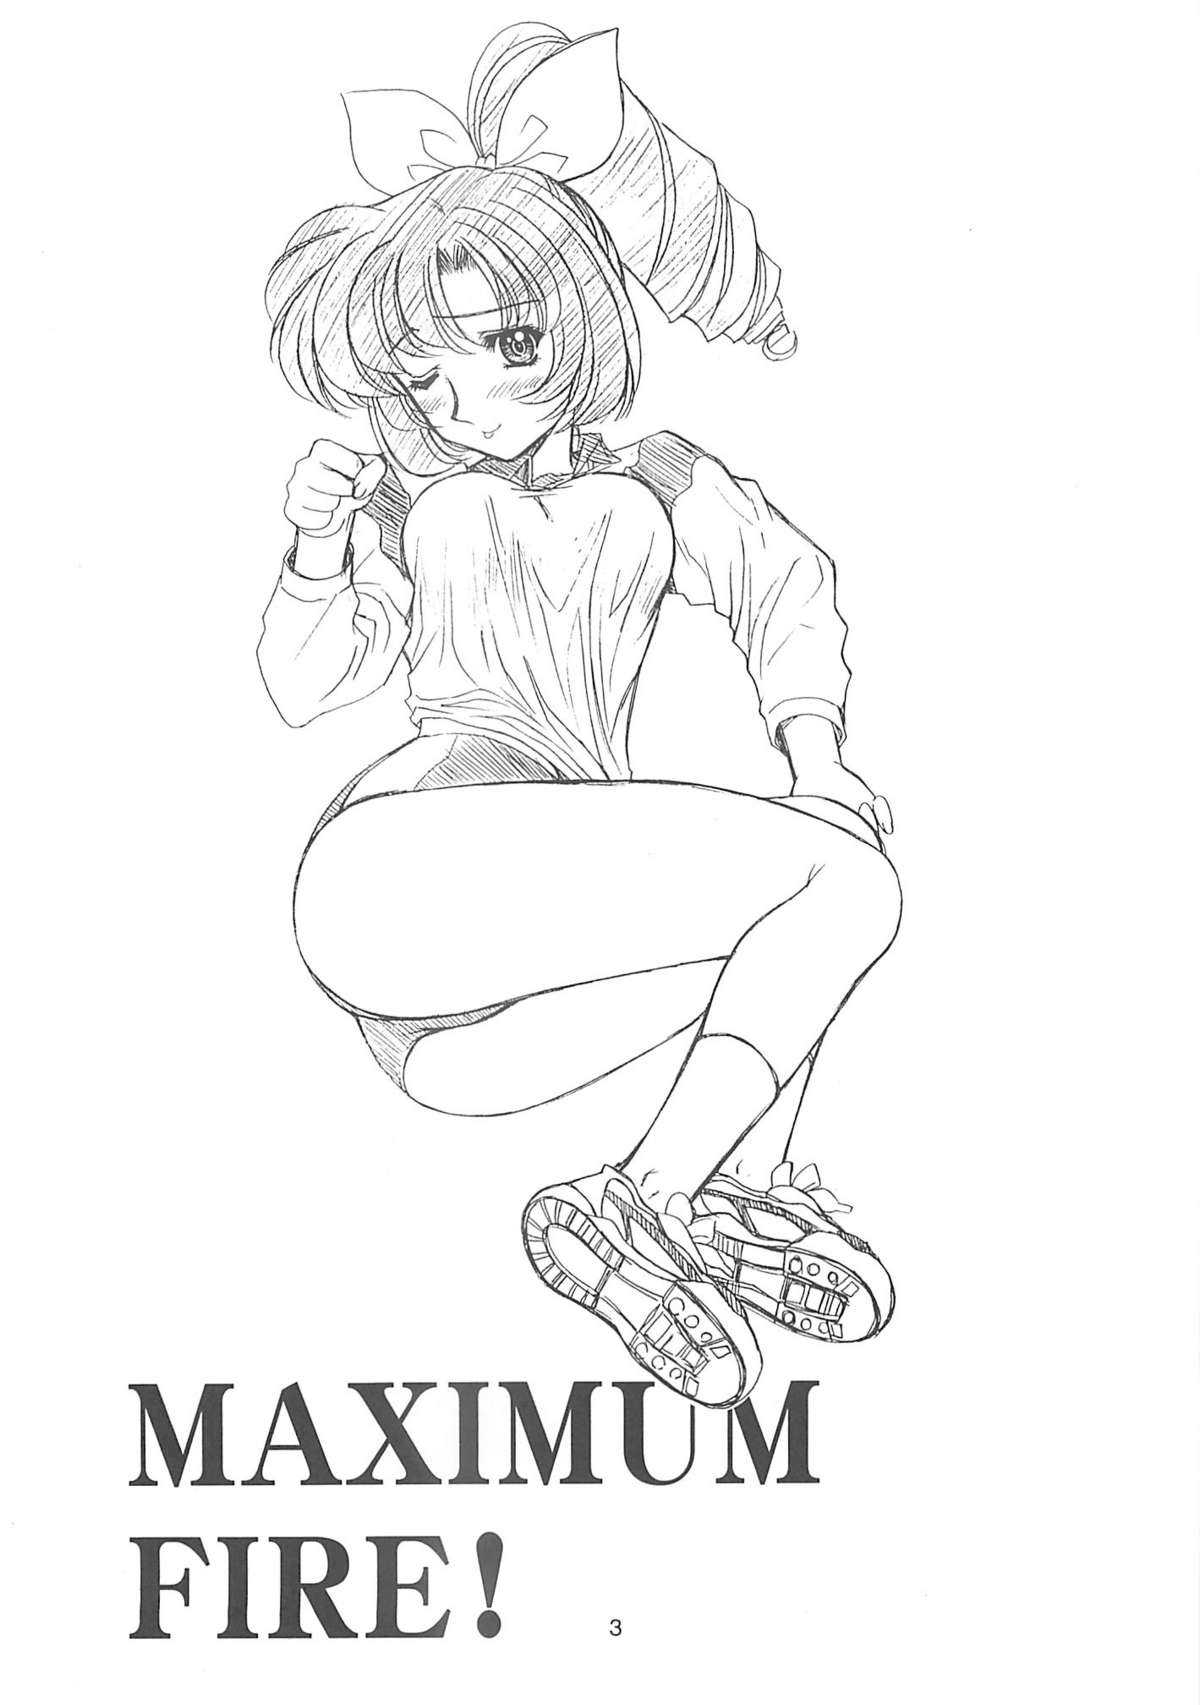 (C62) [Fukumaden (Ohkami Tomoyuki)] Maximum Fire! (Doki Doki Pretty League) (C62) [伏魔殿 (真神智之)] Maximum Fire! (ドキドキプリティリーグ)